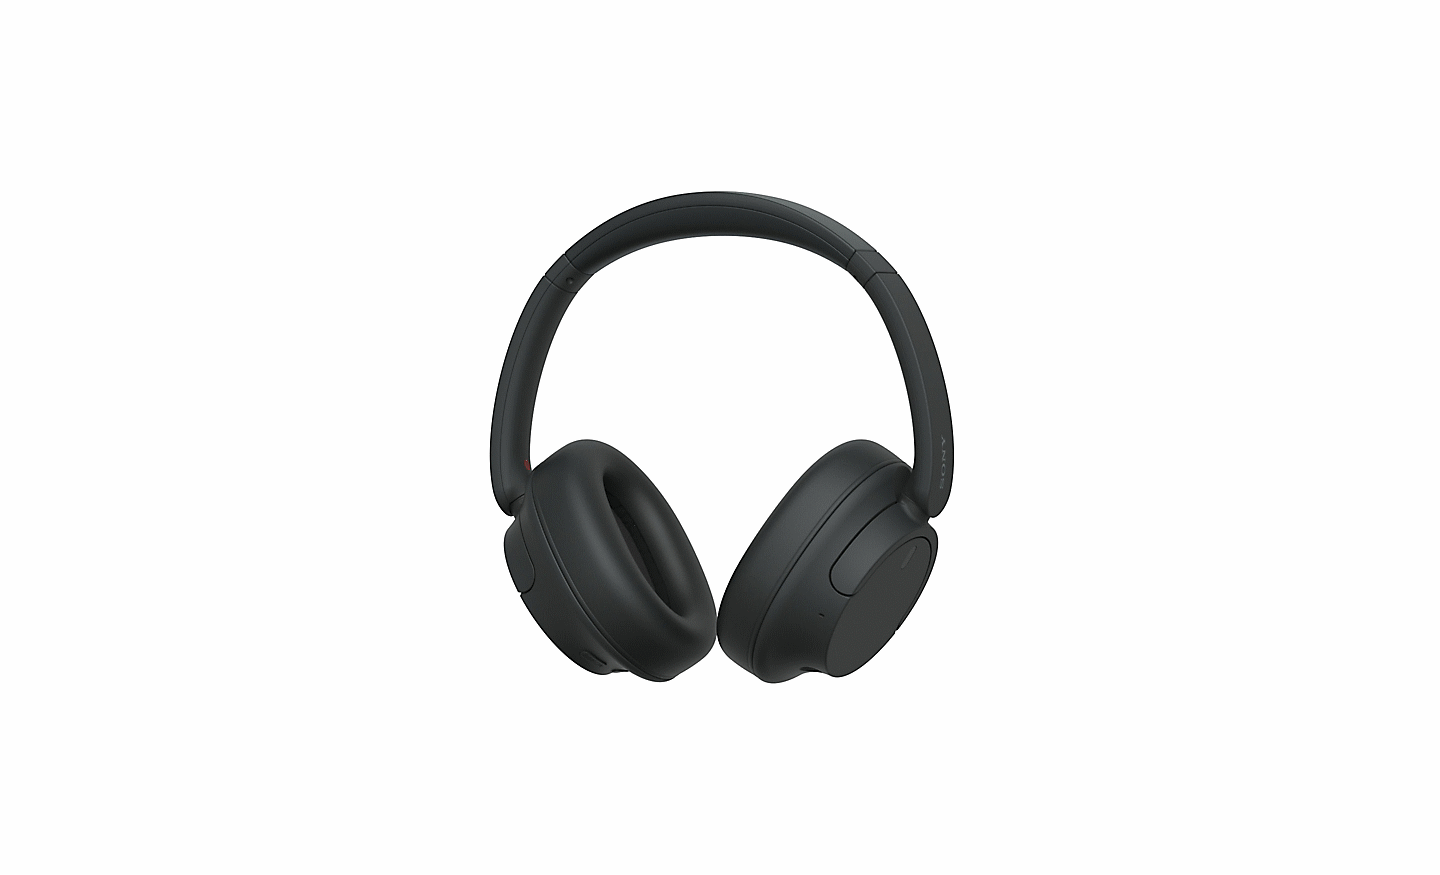 Immagine di un paio di cuffie WH-CH720 nere di Sony su sfondo bianco